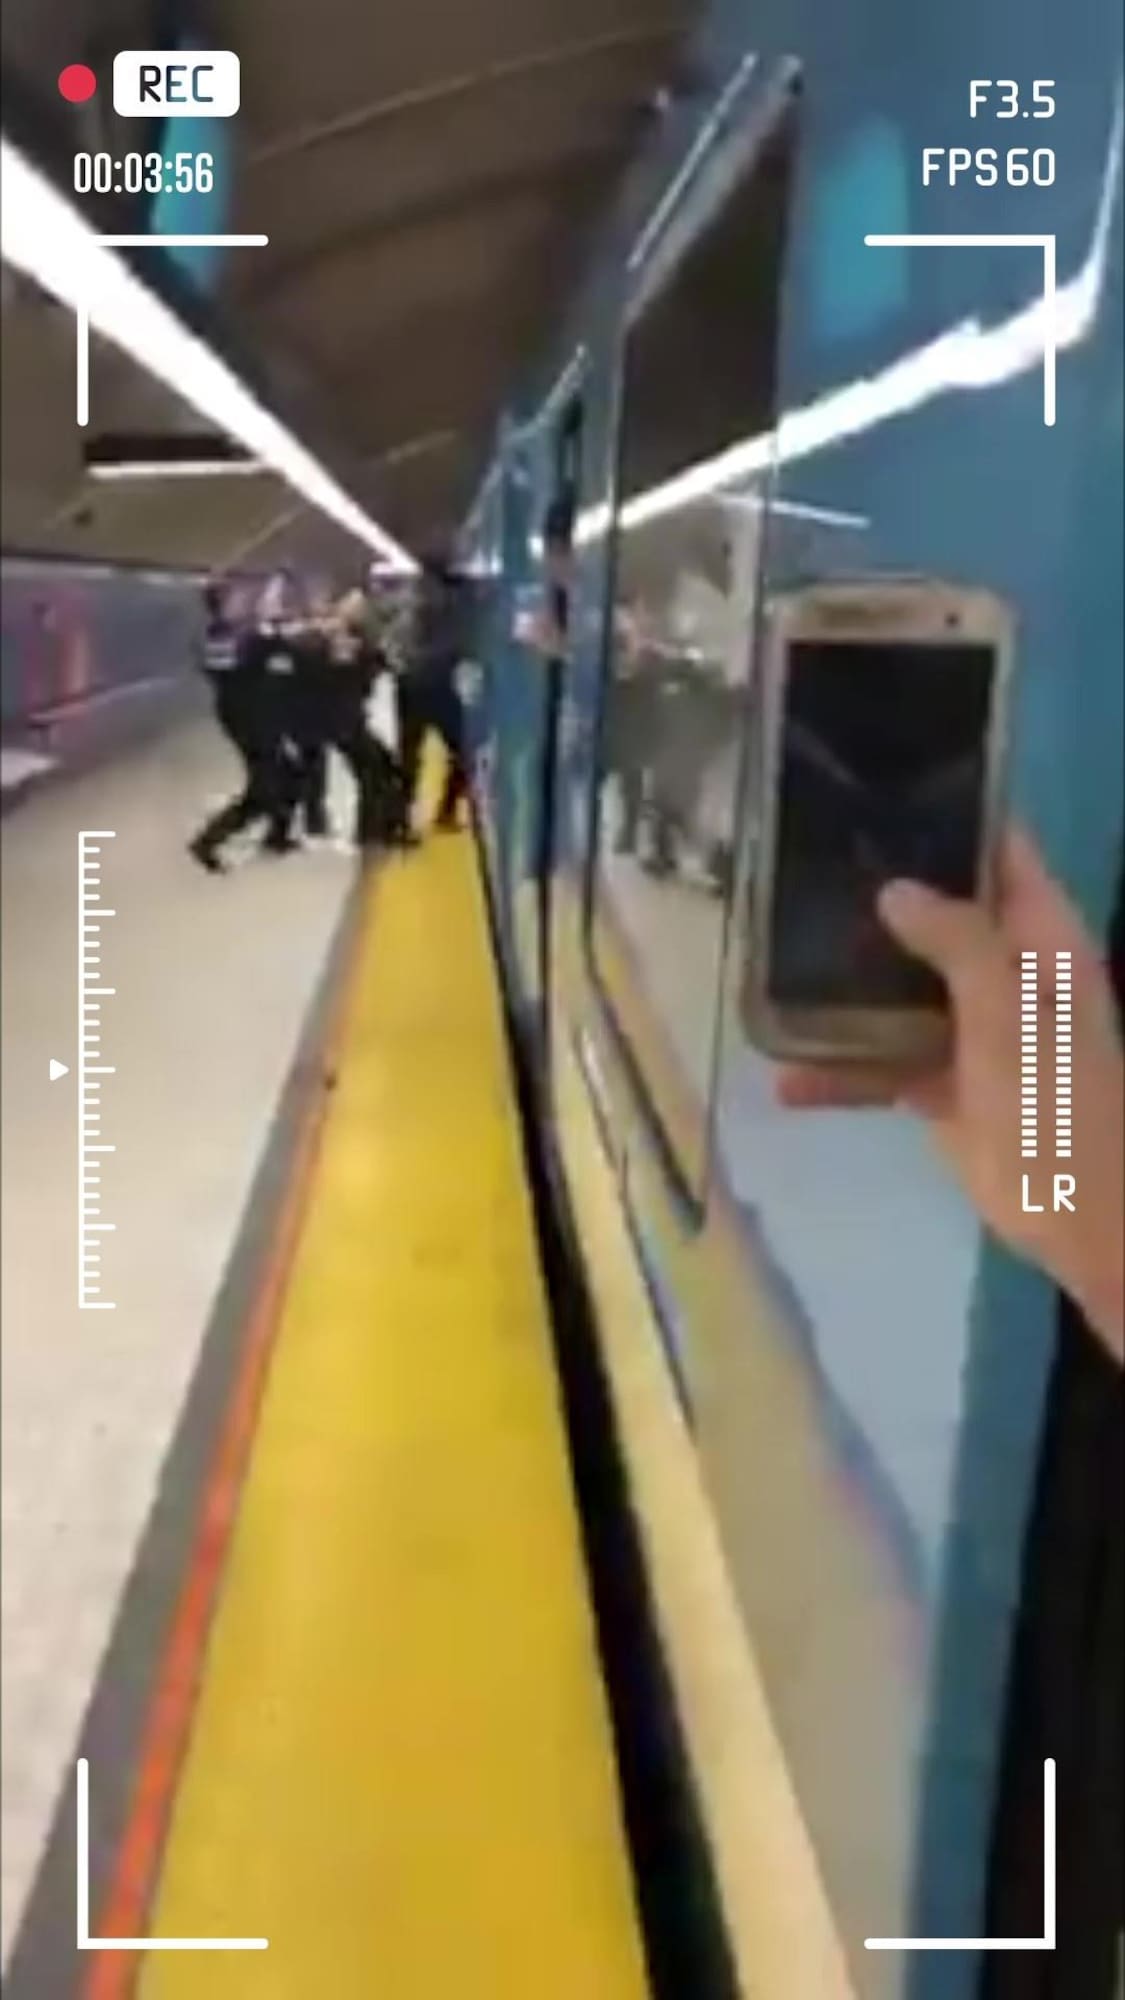 Une personne filme avec un téléphone intelligent des policiers qui tentent d'appréhender une personne et de la sortir d'un wagon de métro.